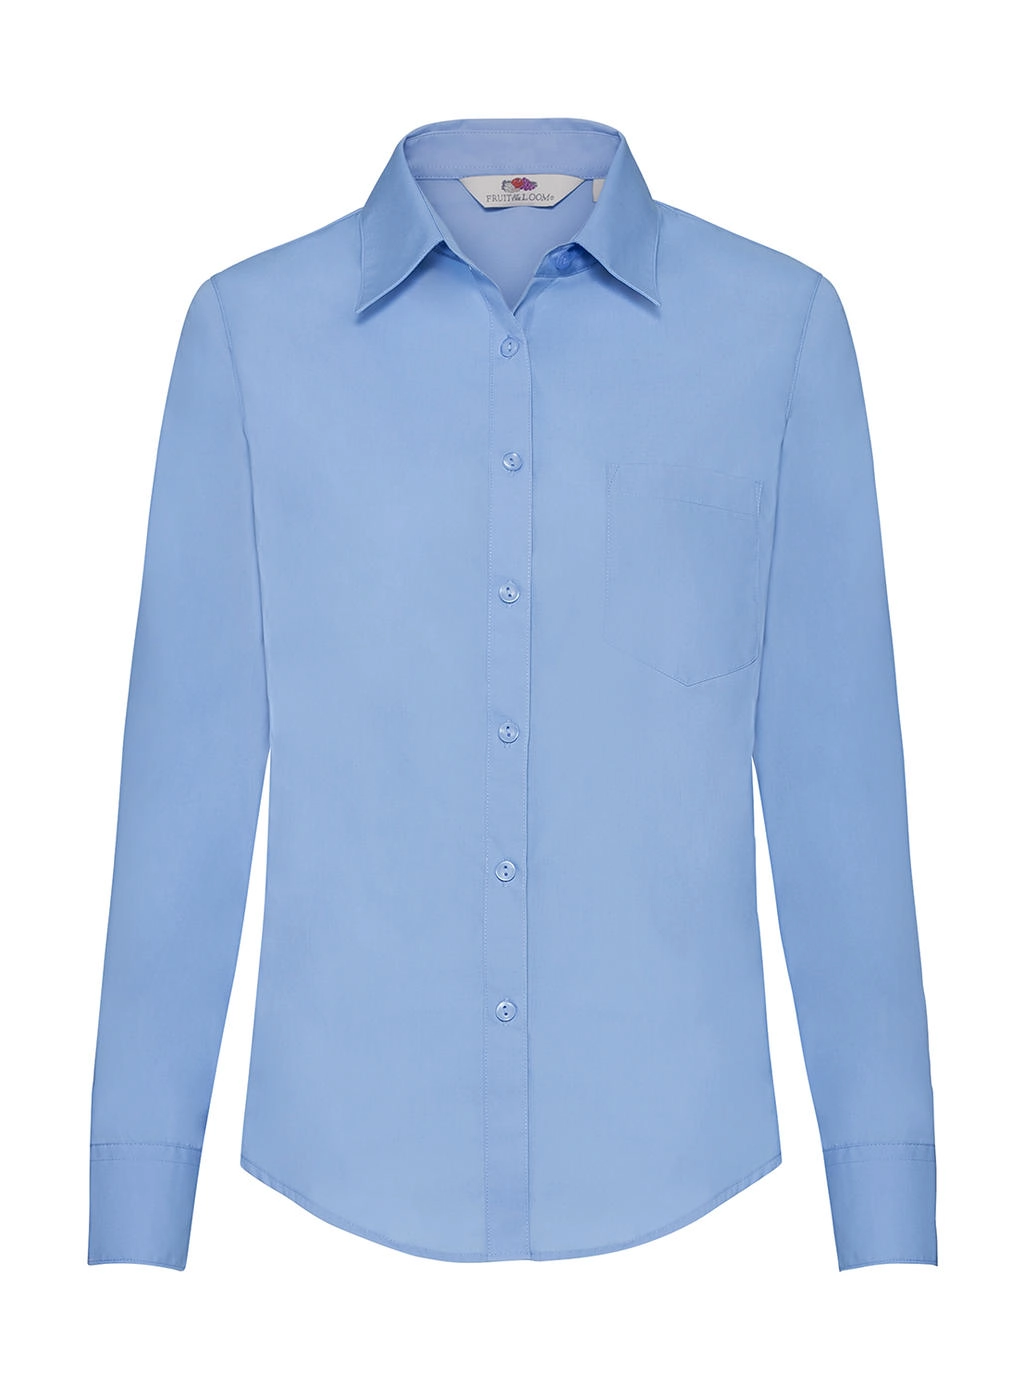 Ladies` Poplin Shirt LS zum Besticken und Bedrucken in der Farbe Mid Blue mit Ihren Logo, Schriftzug oder Motiv.